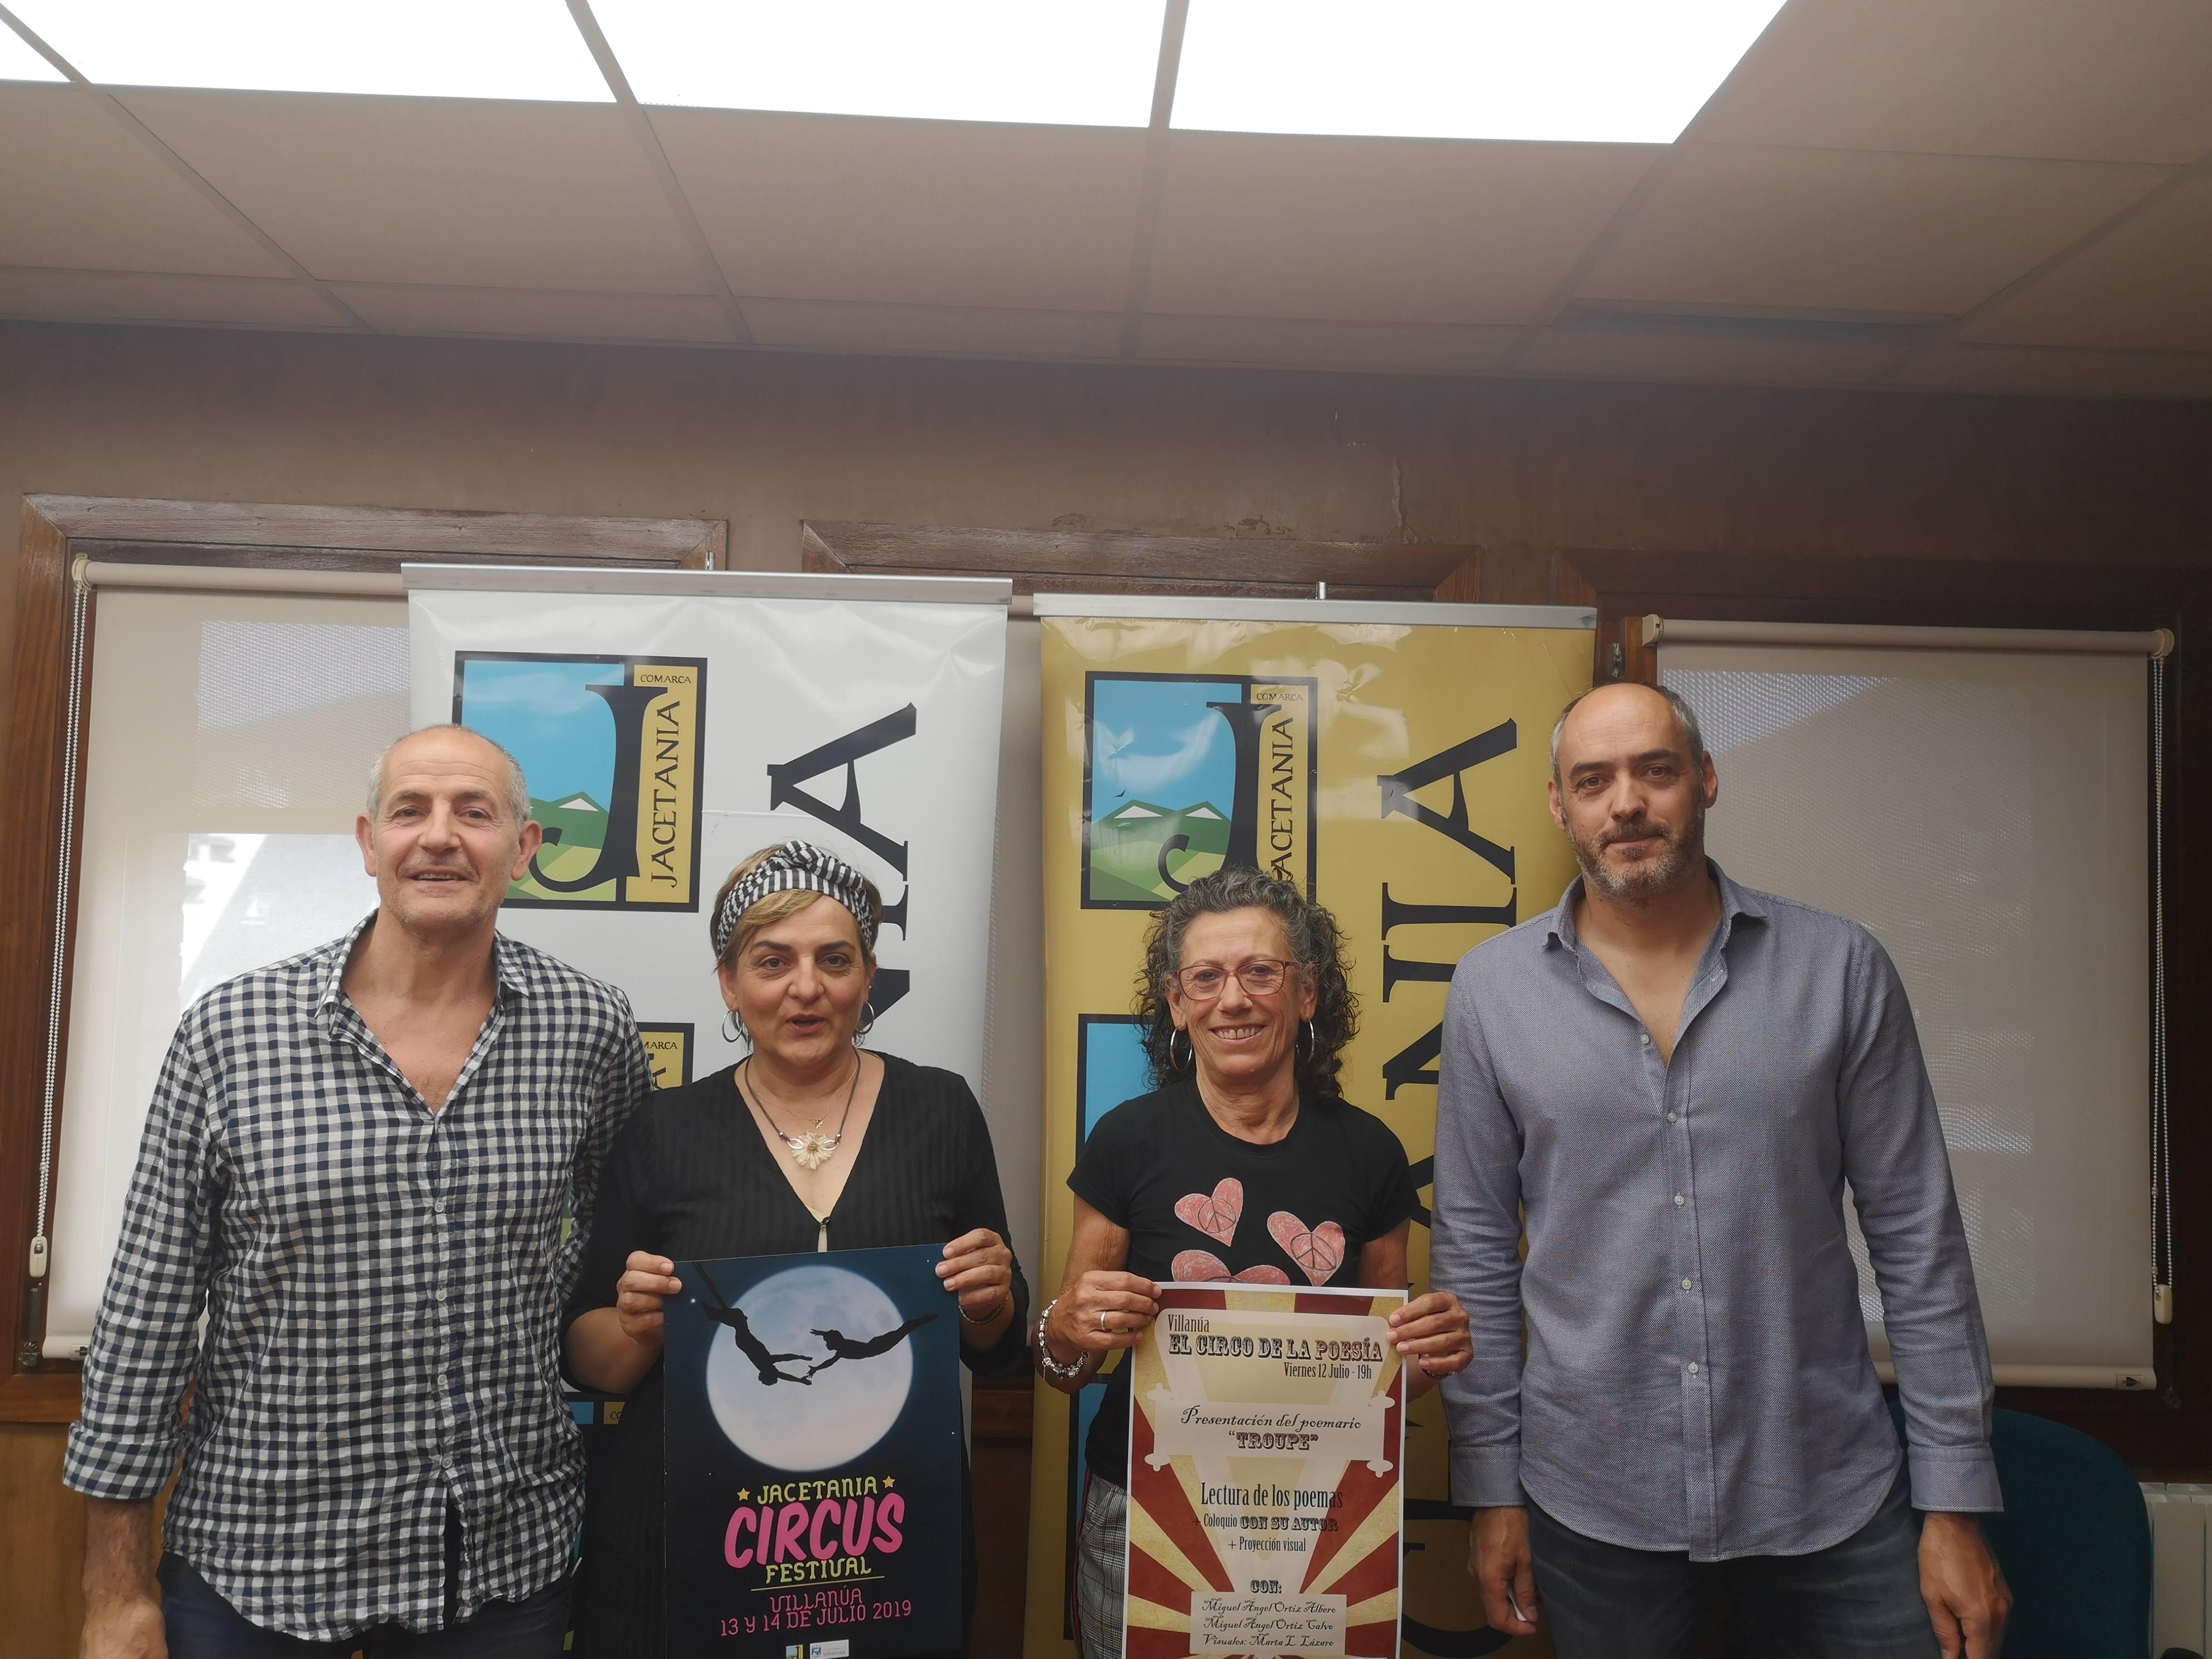 Jacetania Circus Festival volver a mostrar la magia del circo en Villana